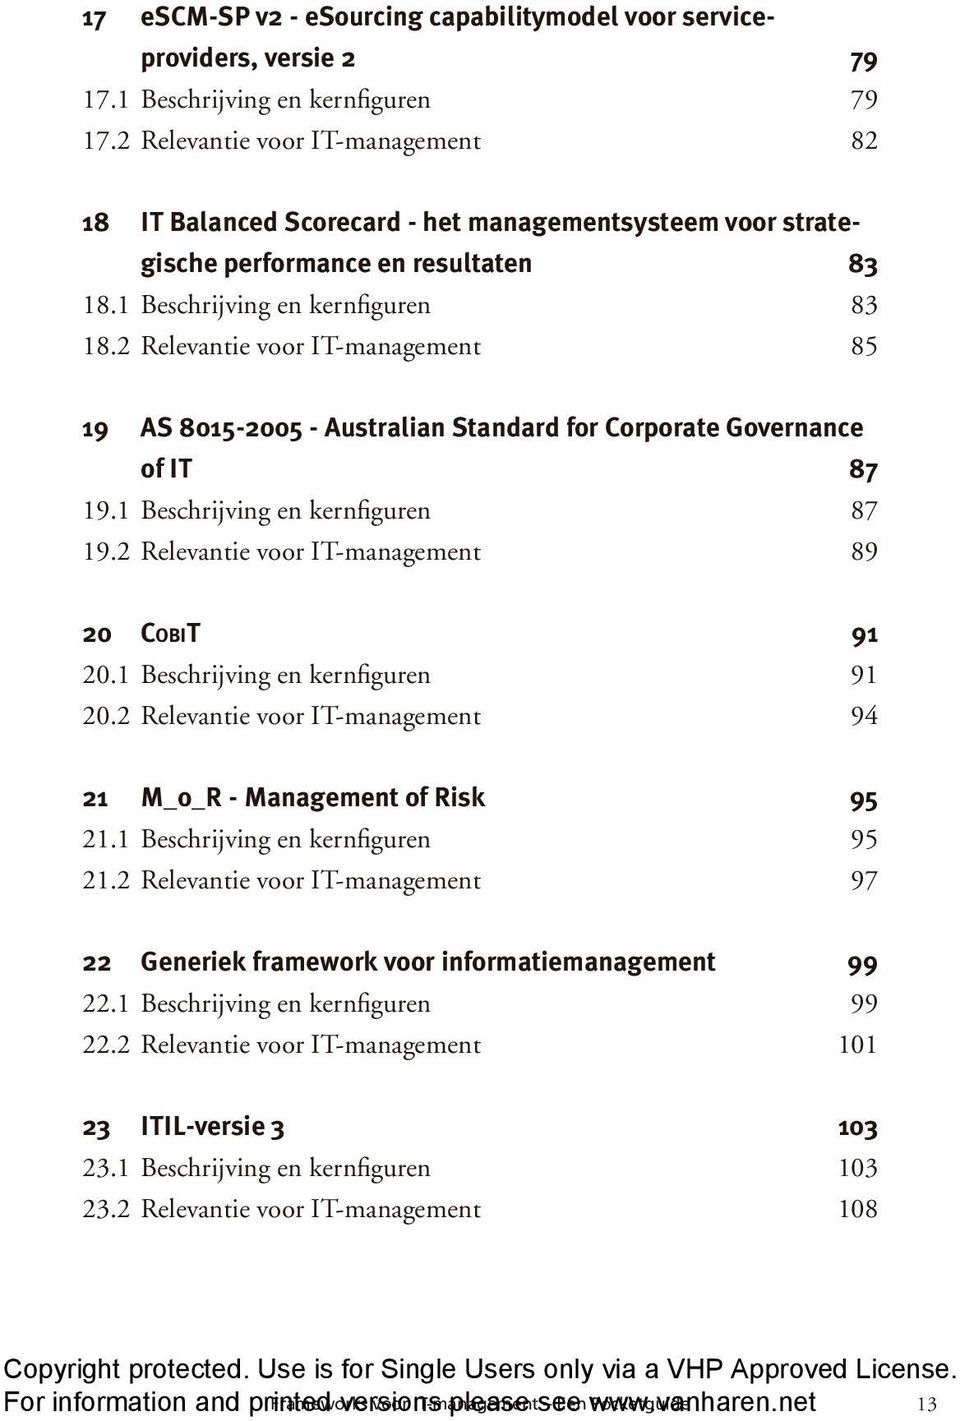 2 Relevantie voor IT-management 85 19 AS 8015-2005 - Australian Standard for Corporate Governance of IT 87 19.1 Beschrijving en kernfiguren 87 19.2 Relevantie voor IT-management 89 20 COBIT 91 20.